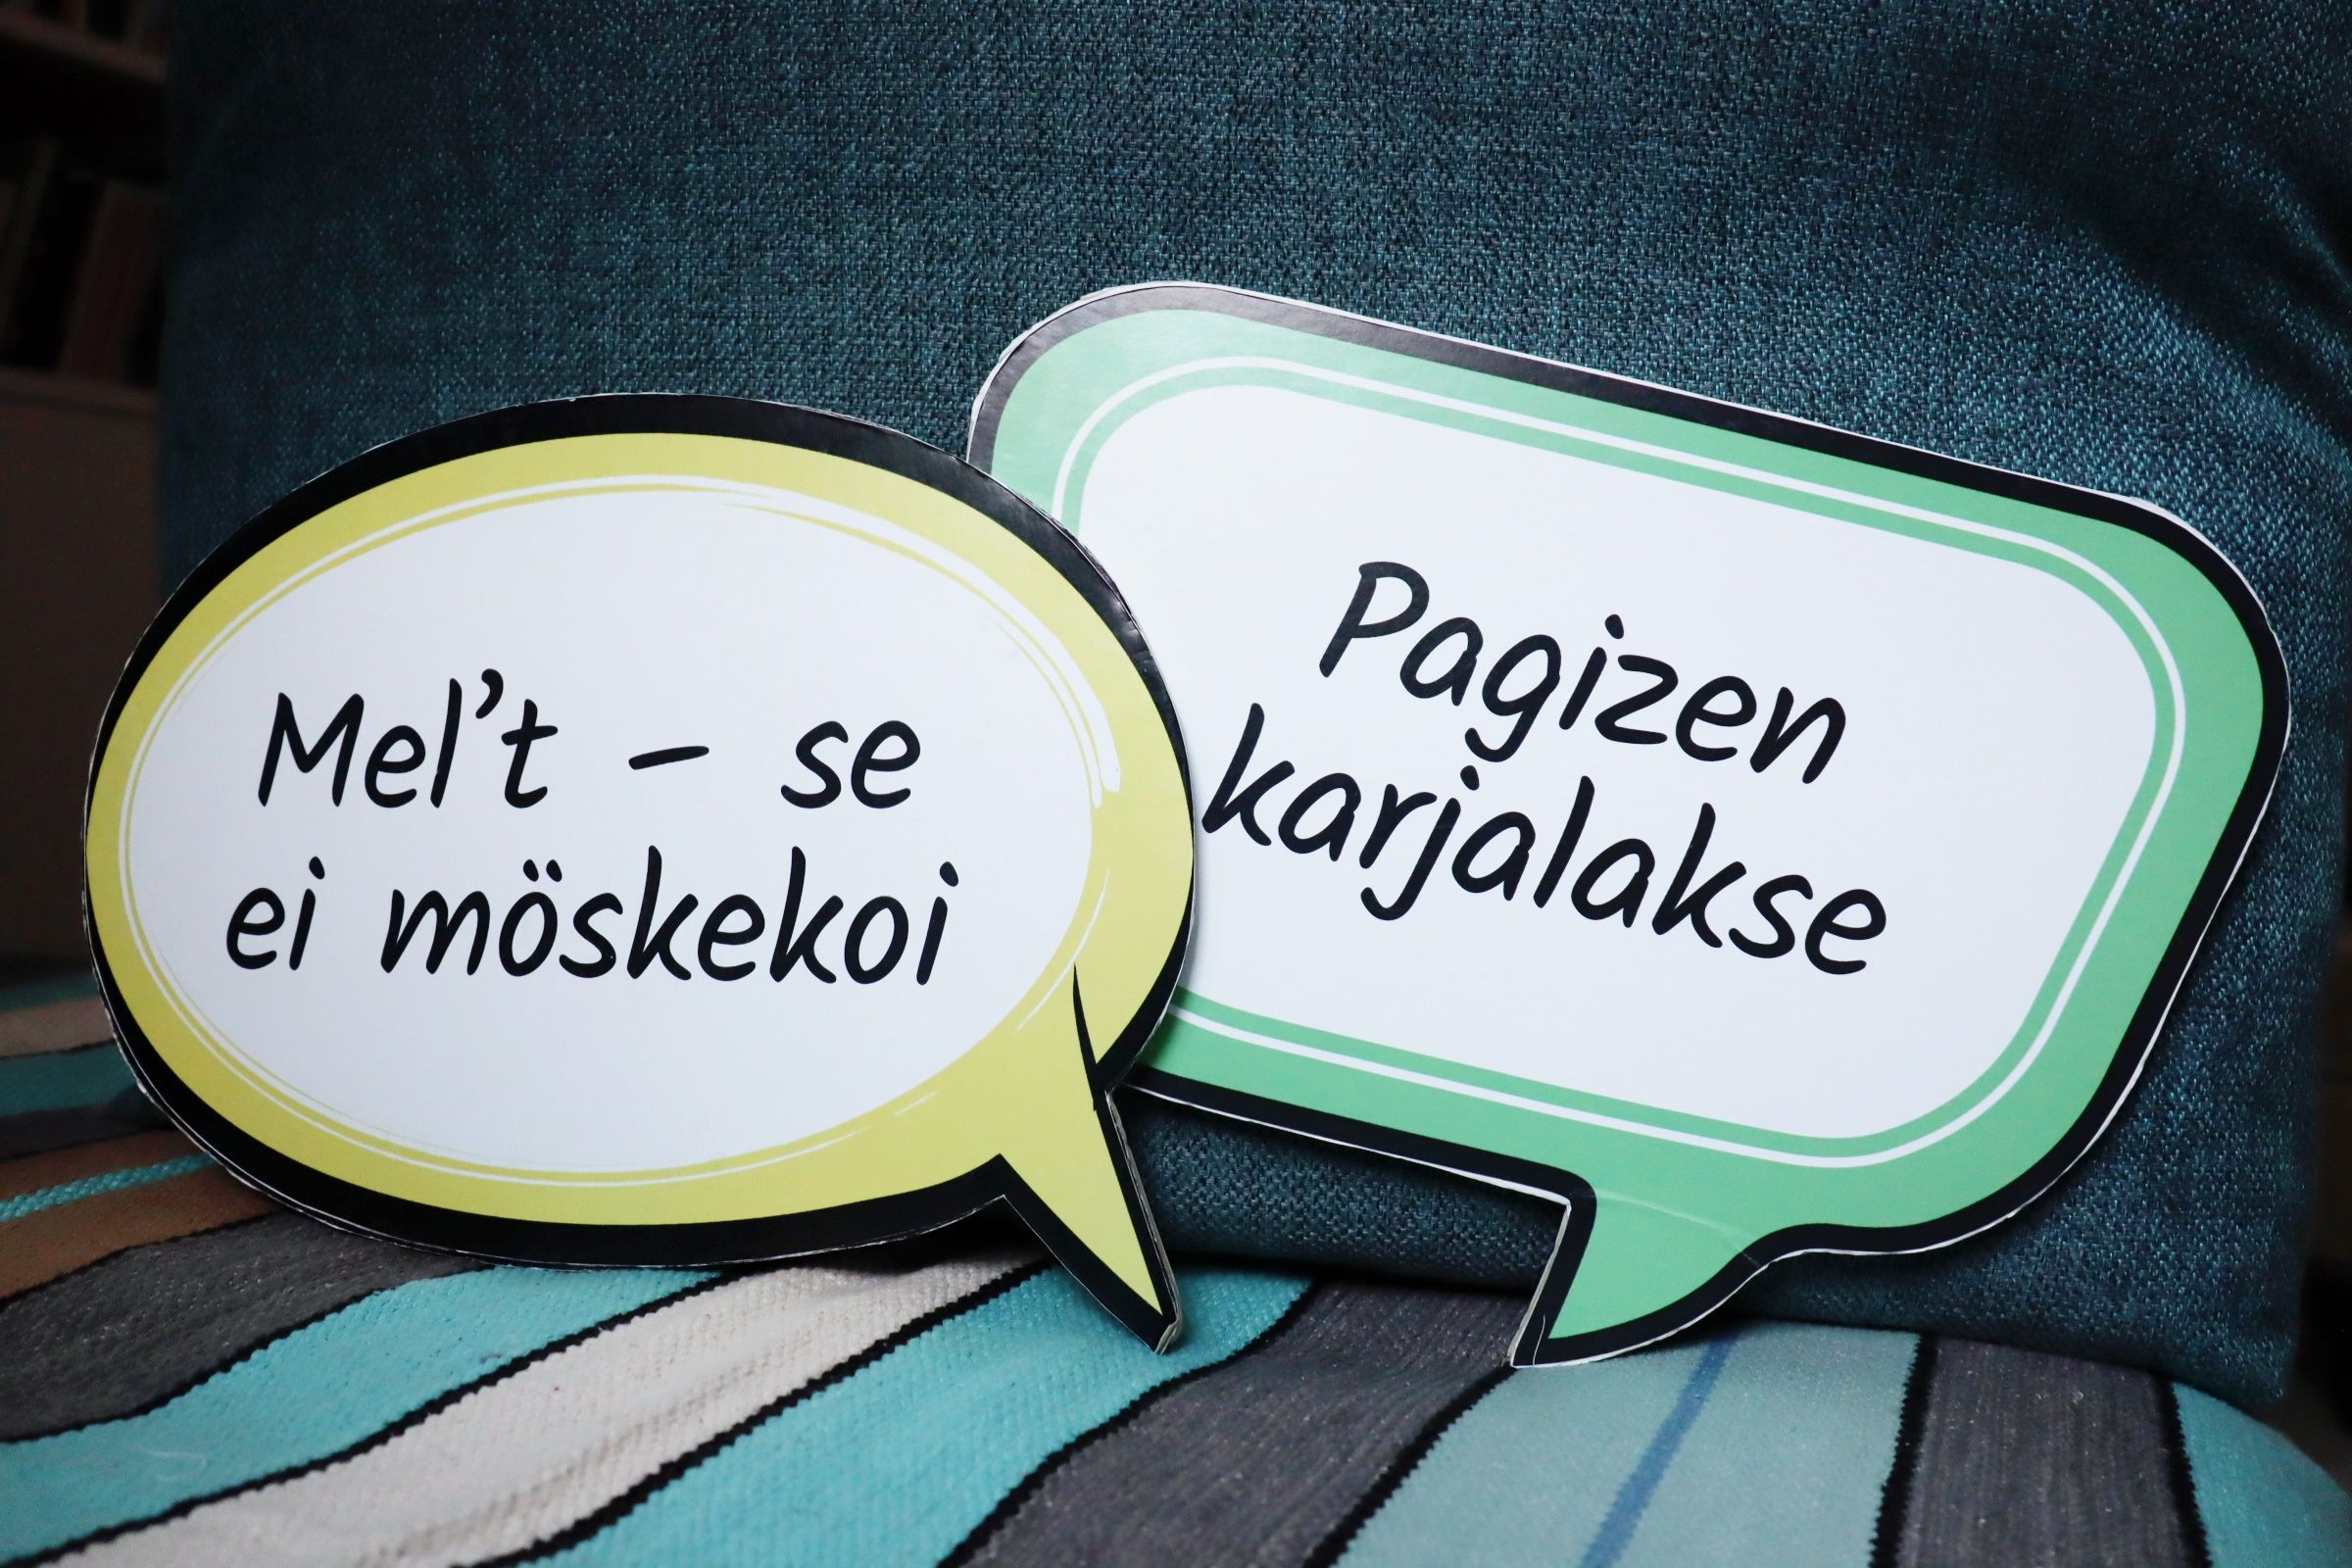 Один из вариантов участия в языковых неделях – сделать таблички с фразами на карельском и вепсском языке. Фото Алины Картынен.